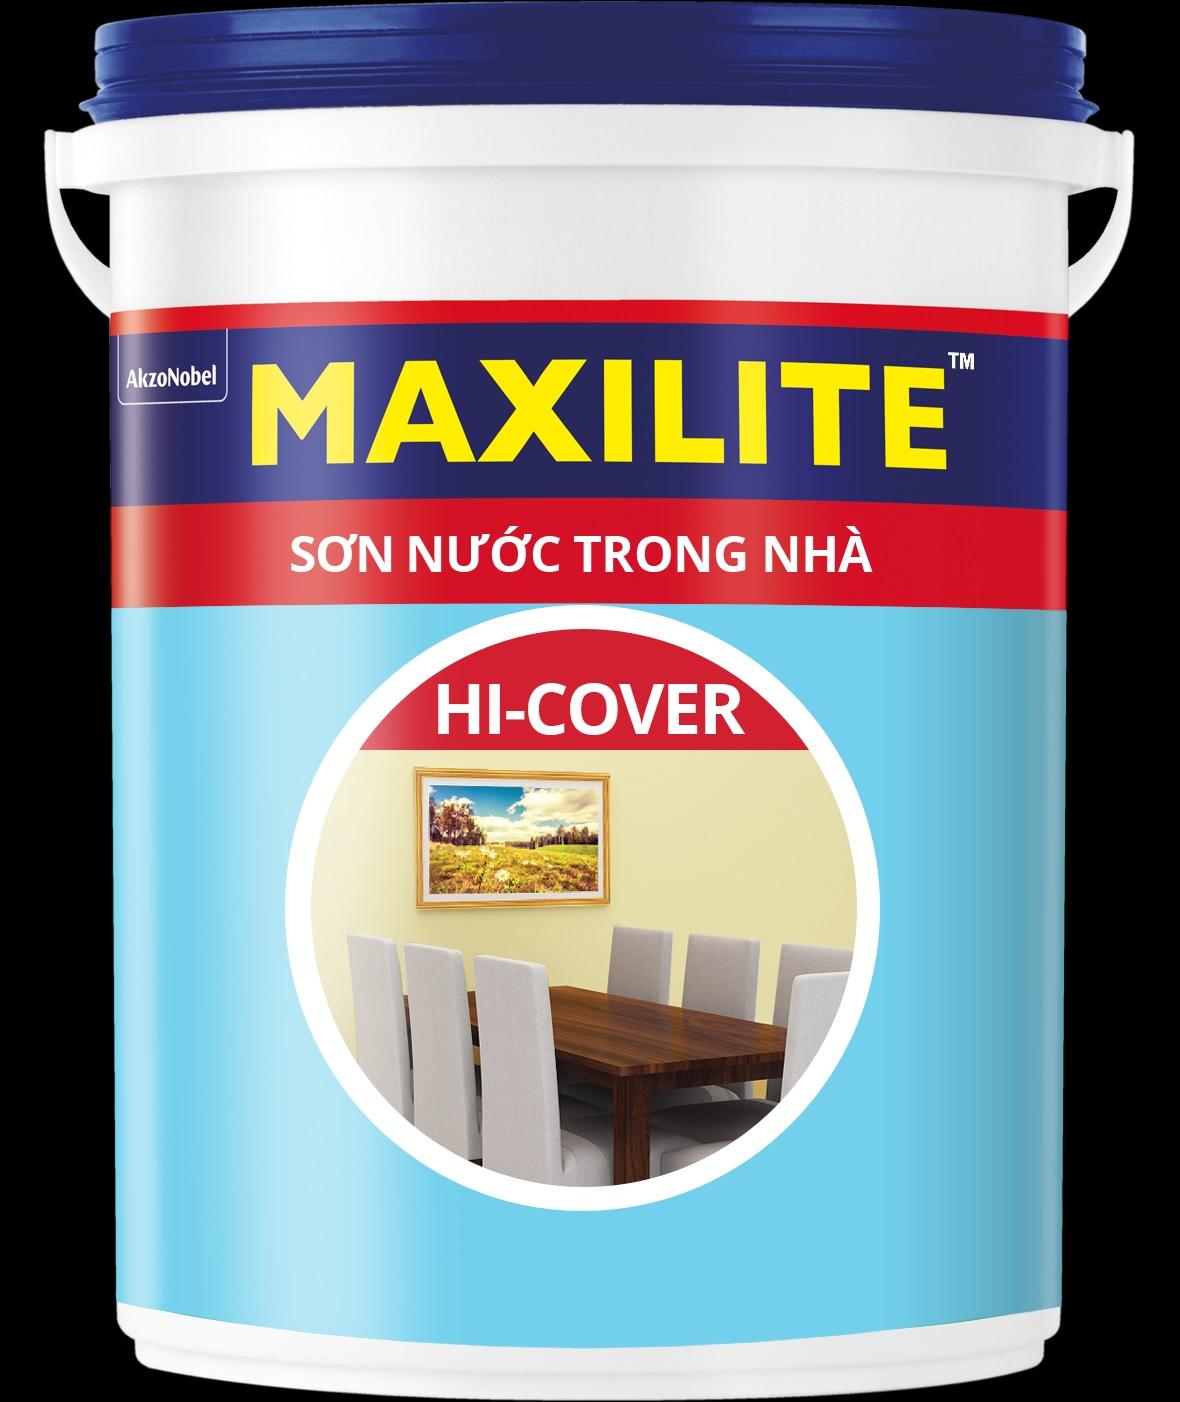 Sơn nước trong nhà Maxilite Hi-cover